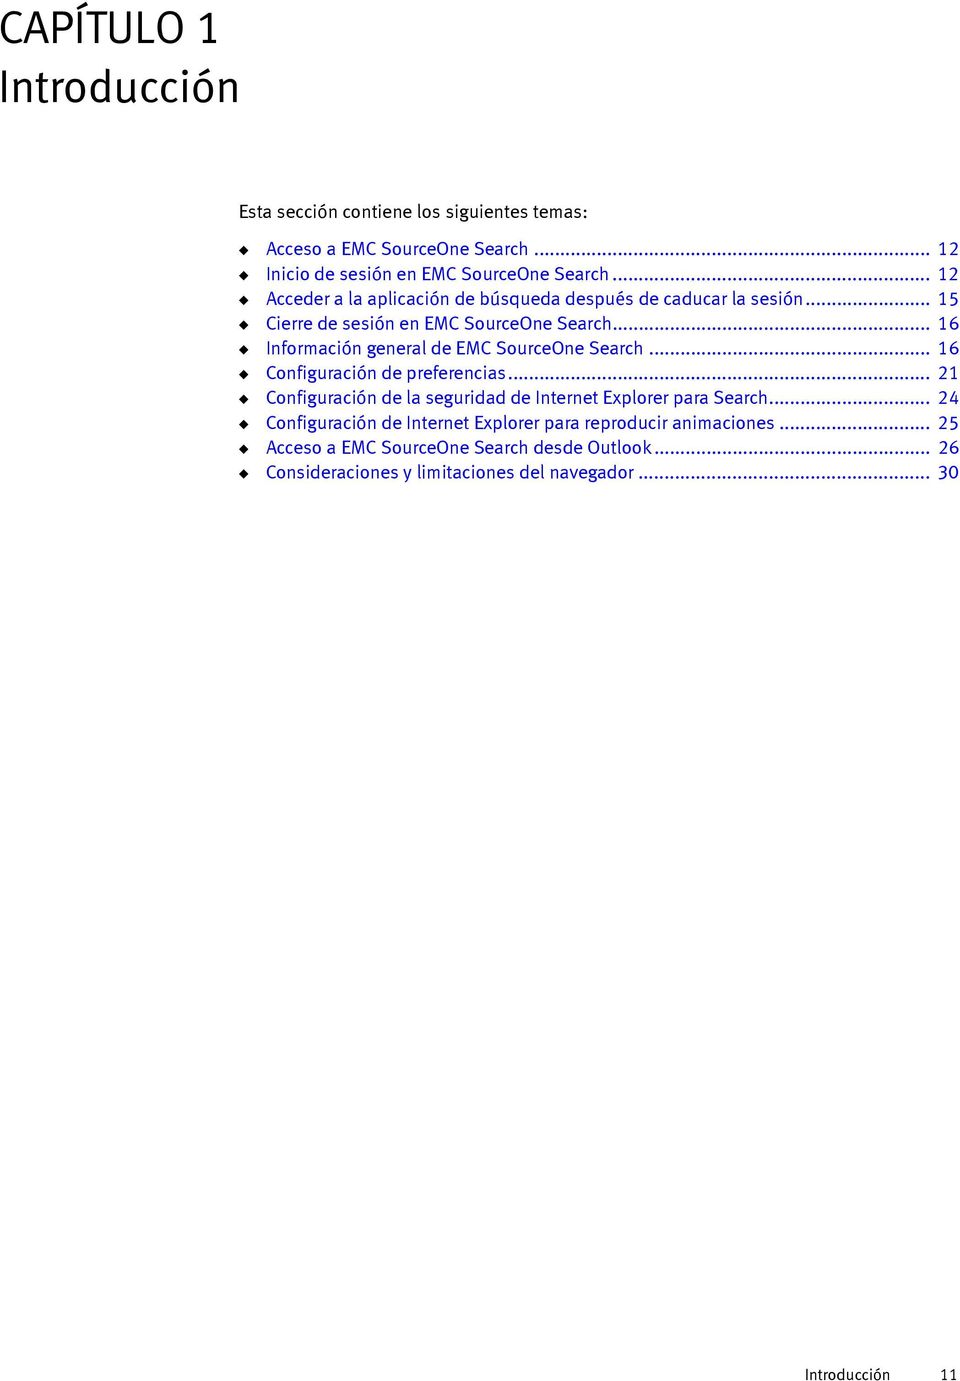 .. 16 Información general de EMC SourceOne Search... 16 Configuración de preferencias... 21 Configuración de la seguridad de Internet Explorer para Search.